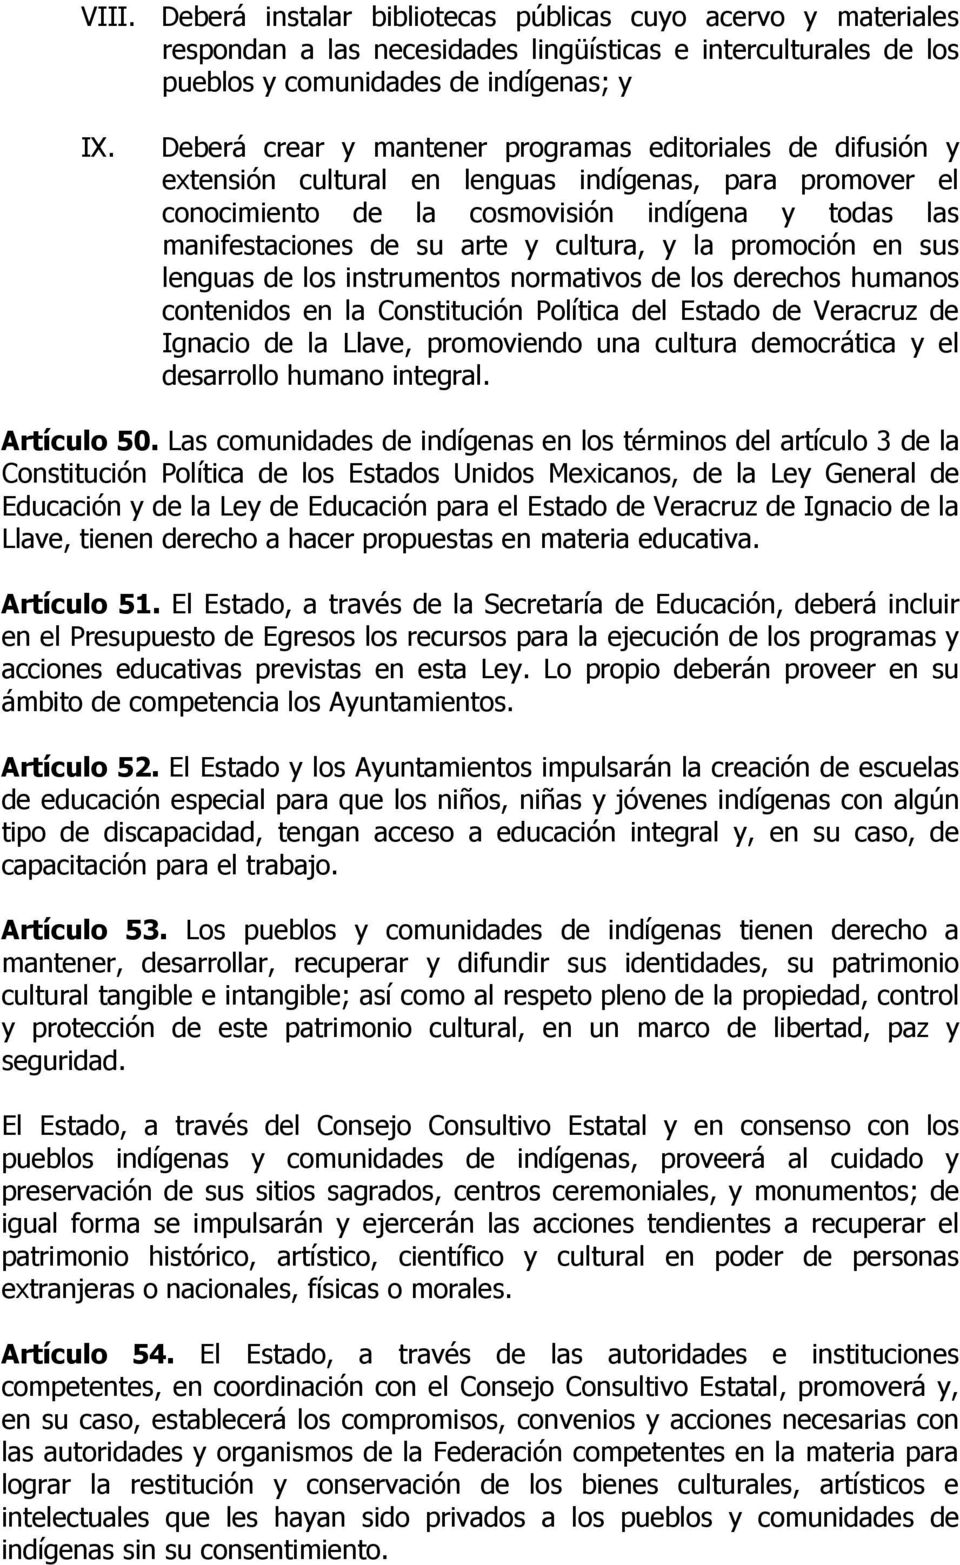 cultura, y la promoción en sus lenguas de los instrumentos normativos de los derechos humanos contenidos en la Constitución Política del Estado de Veracruz de Ignacio de la Llave, promoviendo una